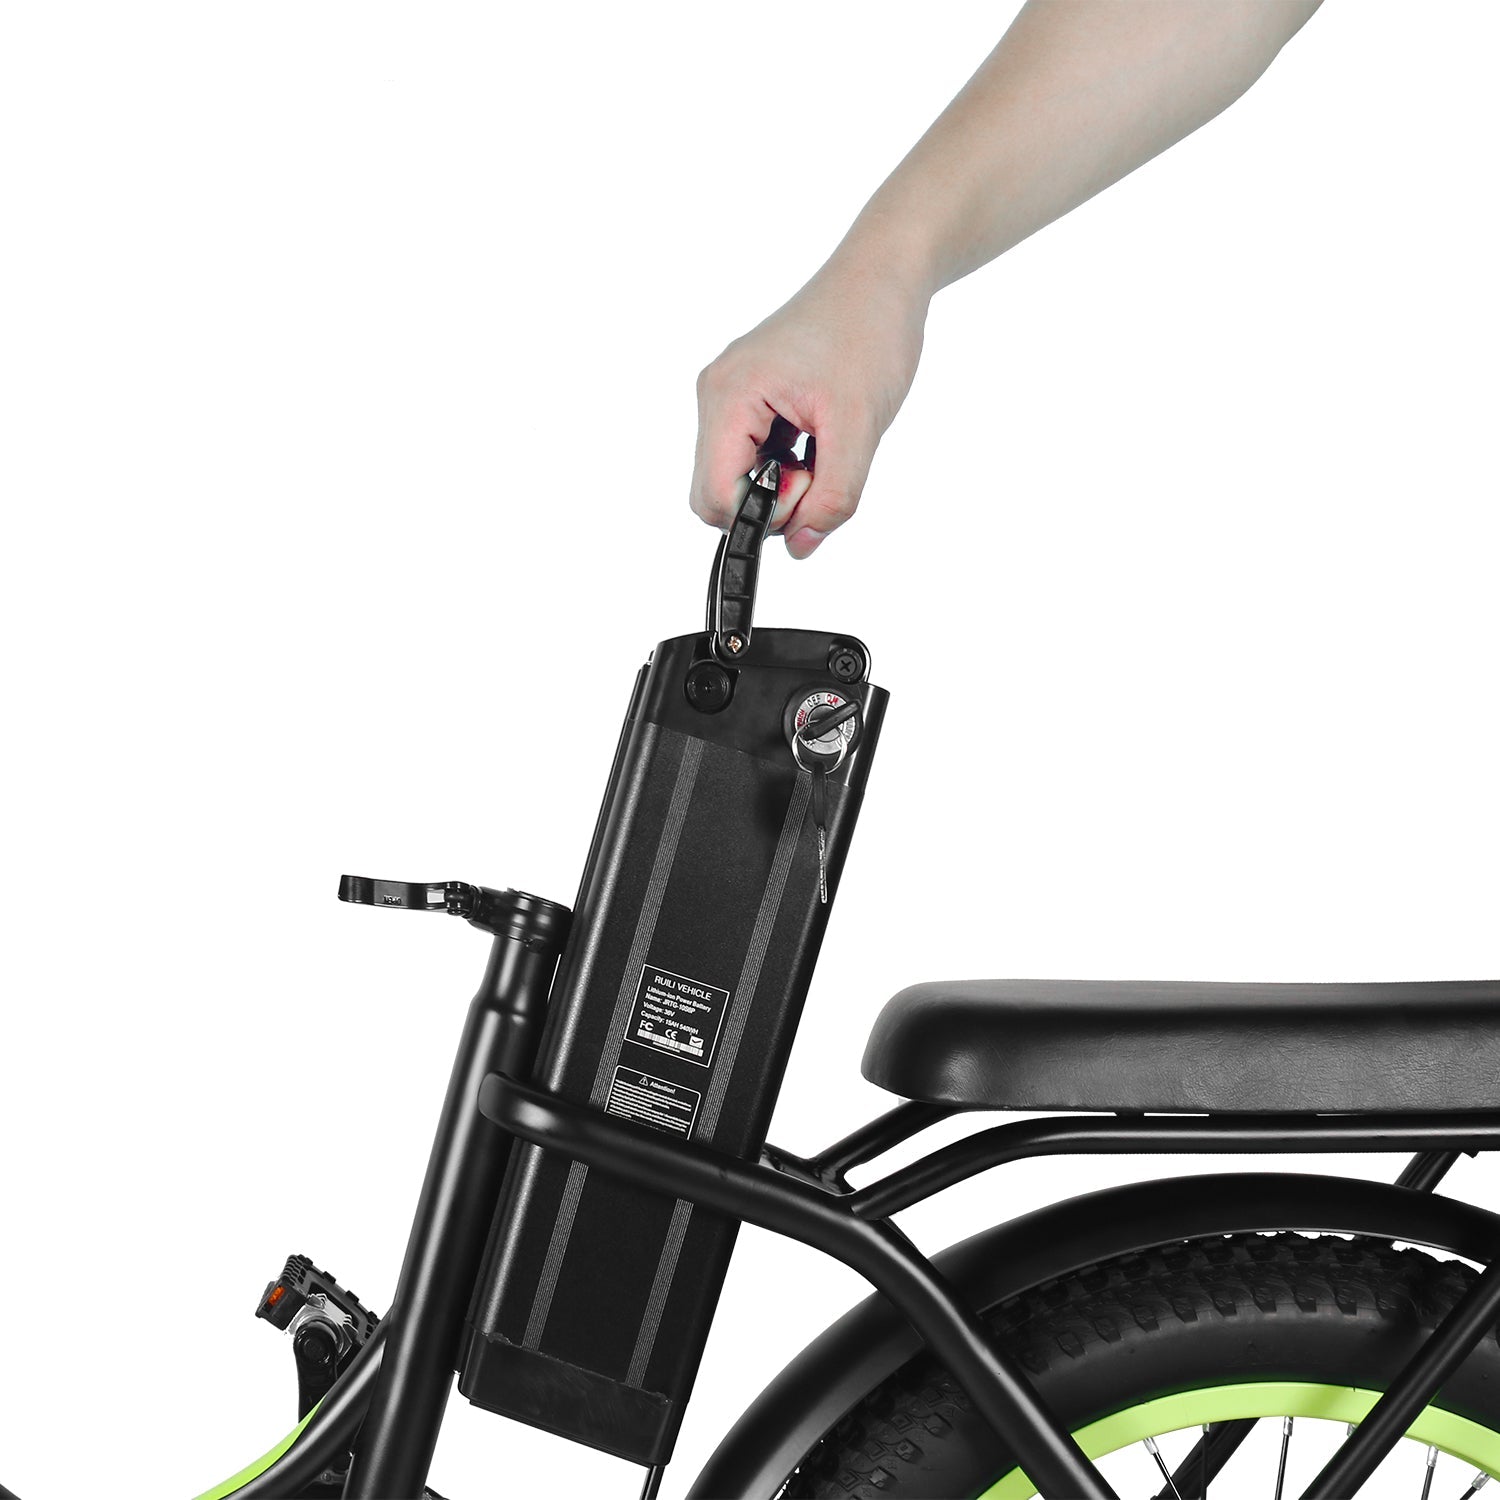 🌿SPRING SALE🌿 Windgoo E20 Foldable Portable E-Bike